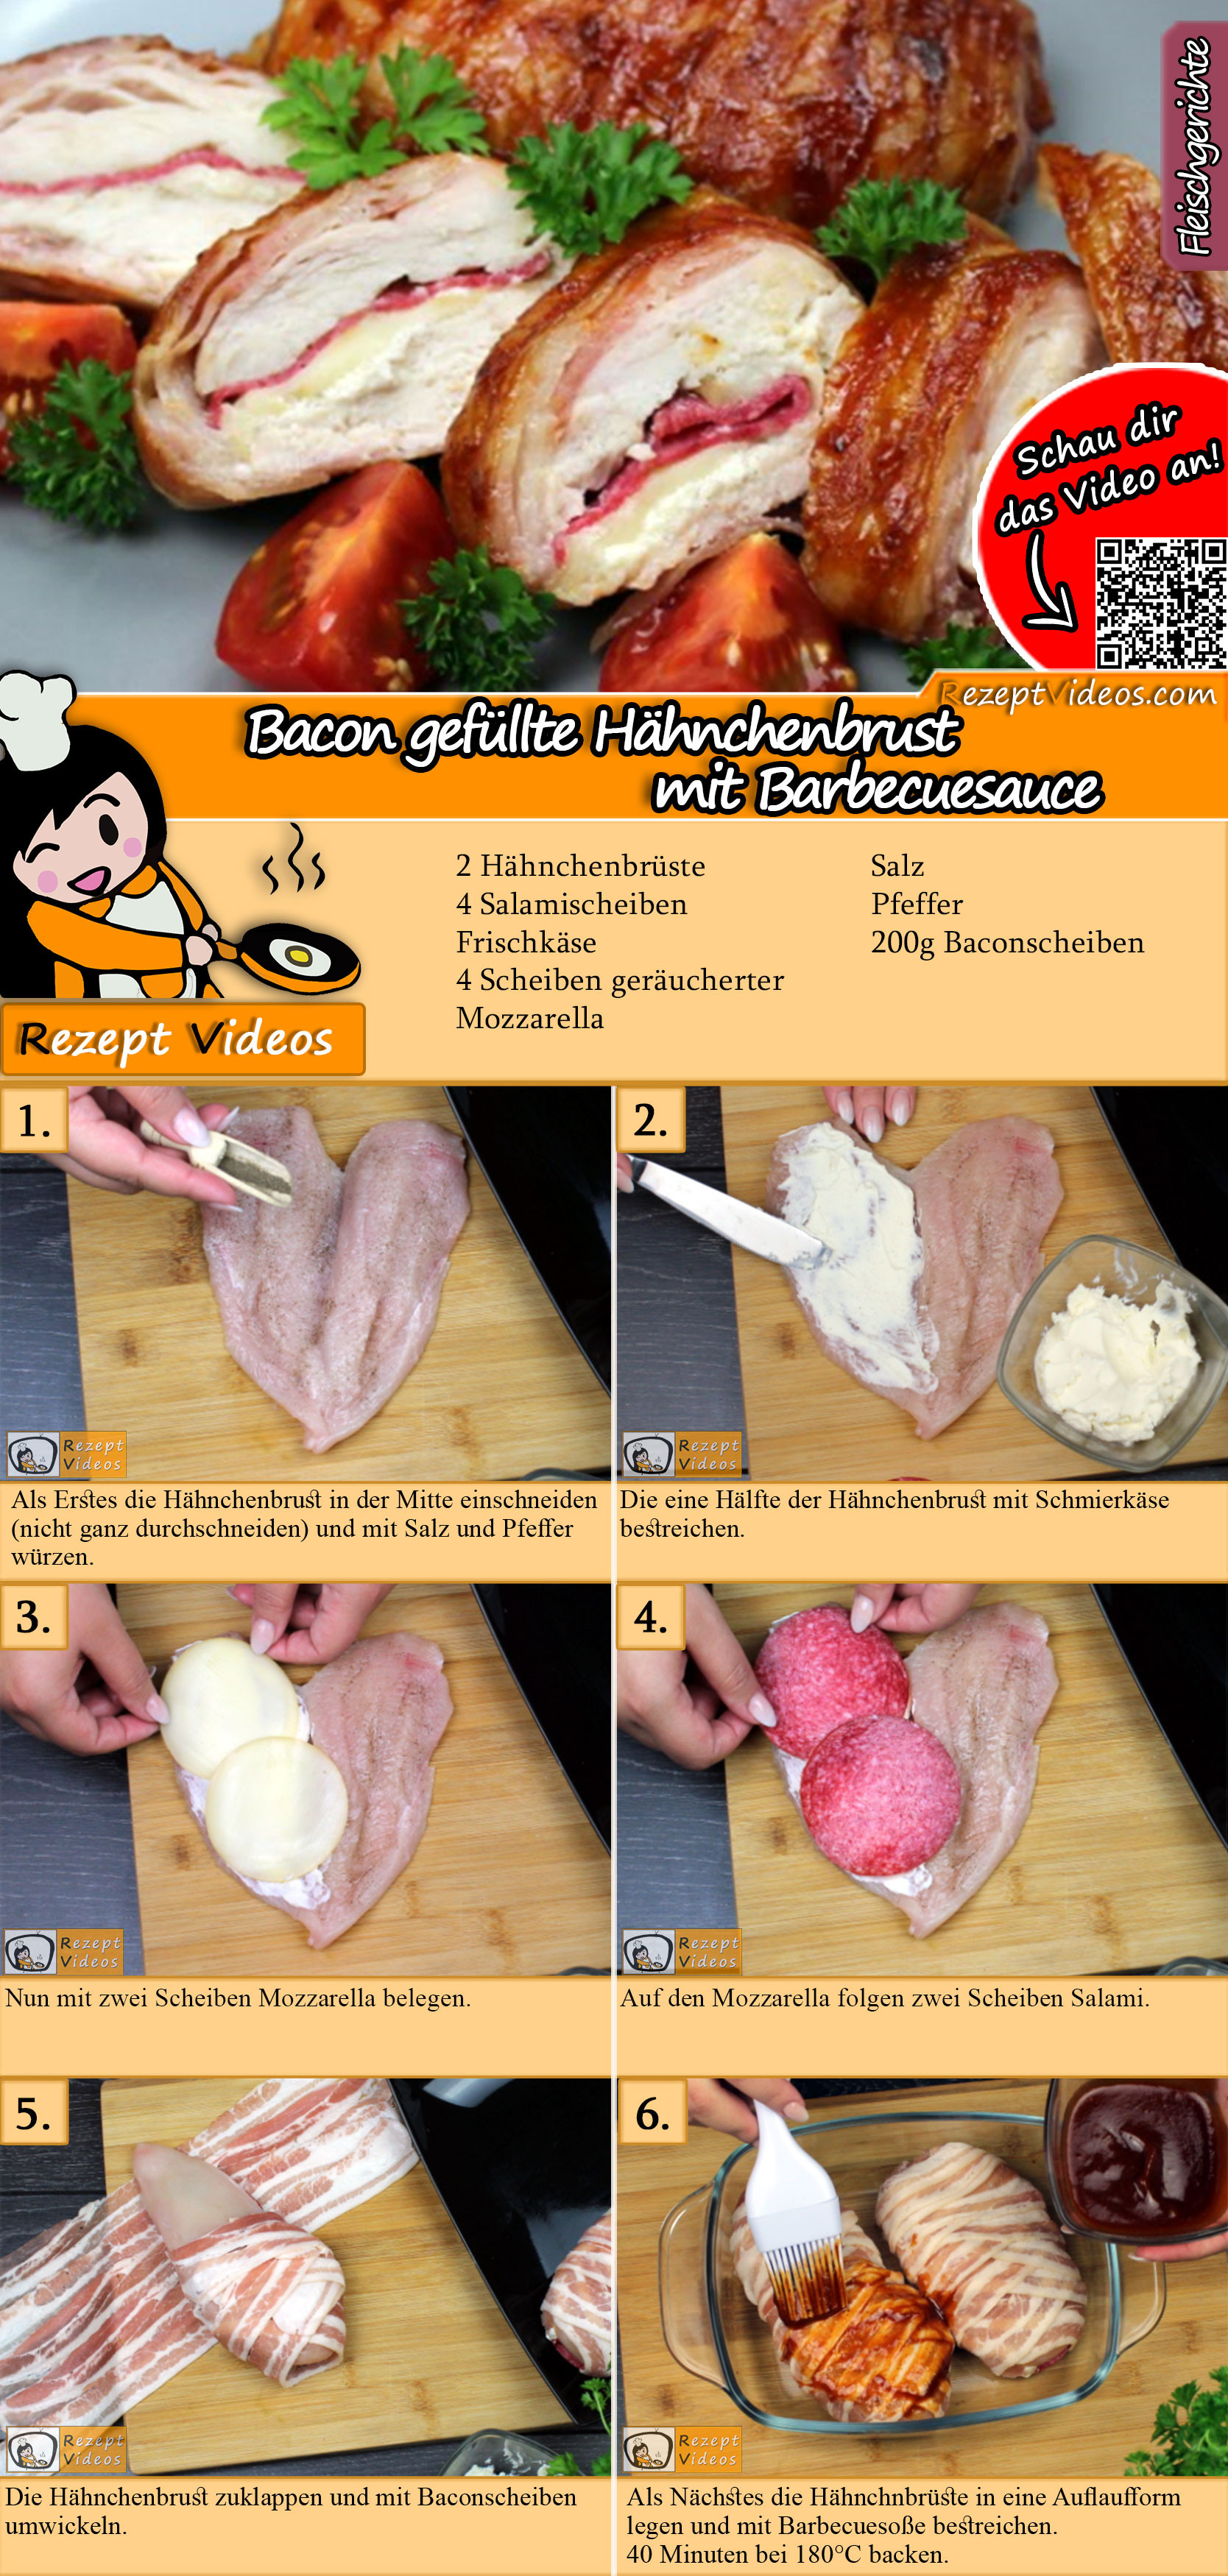 Bacon gefüllte Hähnchenbrust mit Barbecuesauce Rezept mit Video